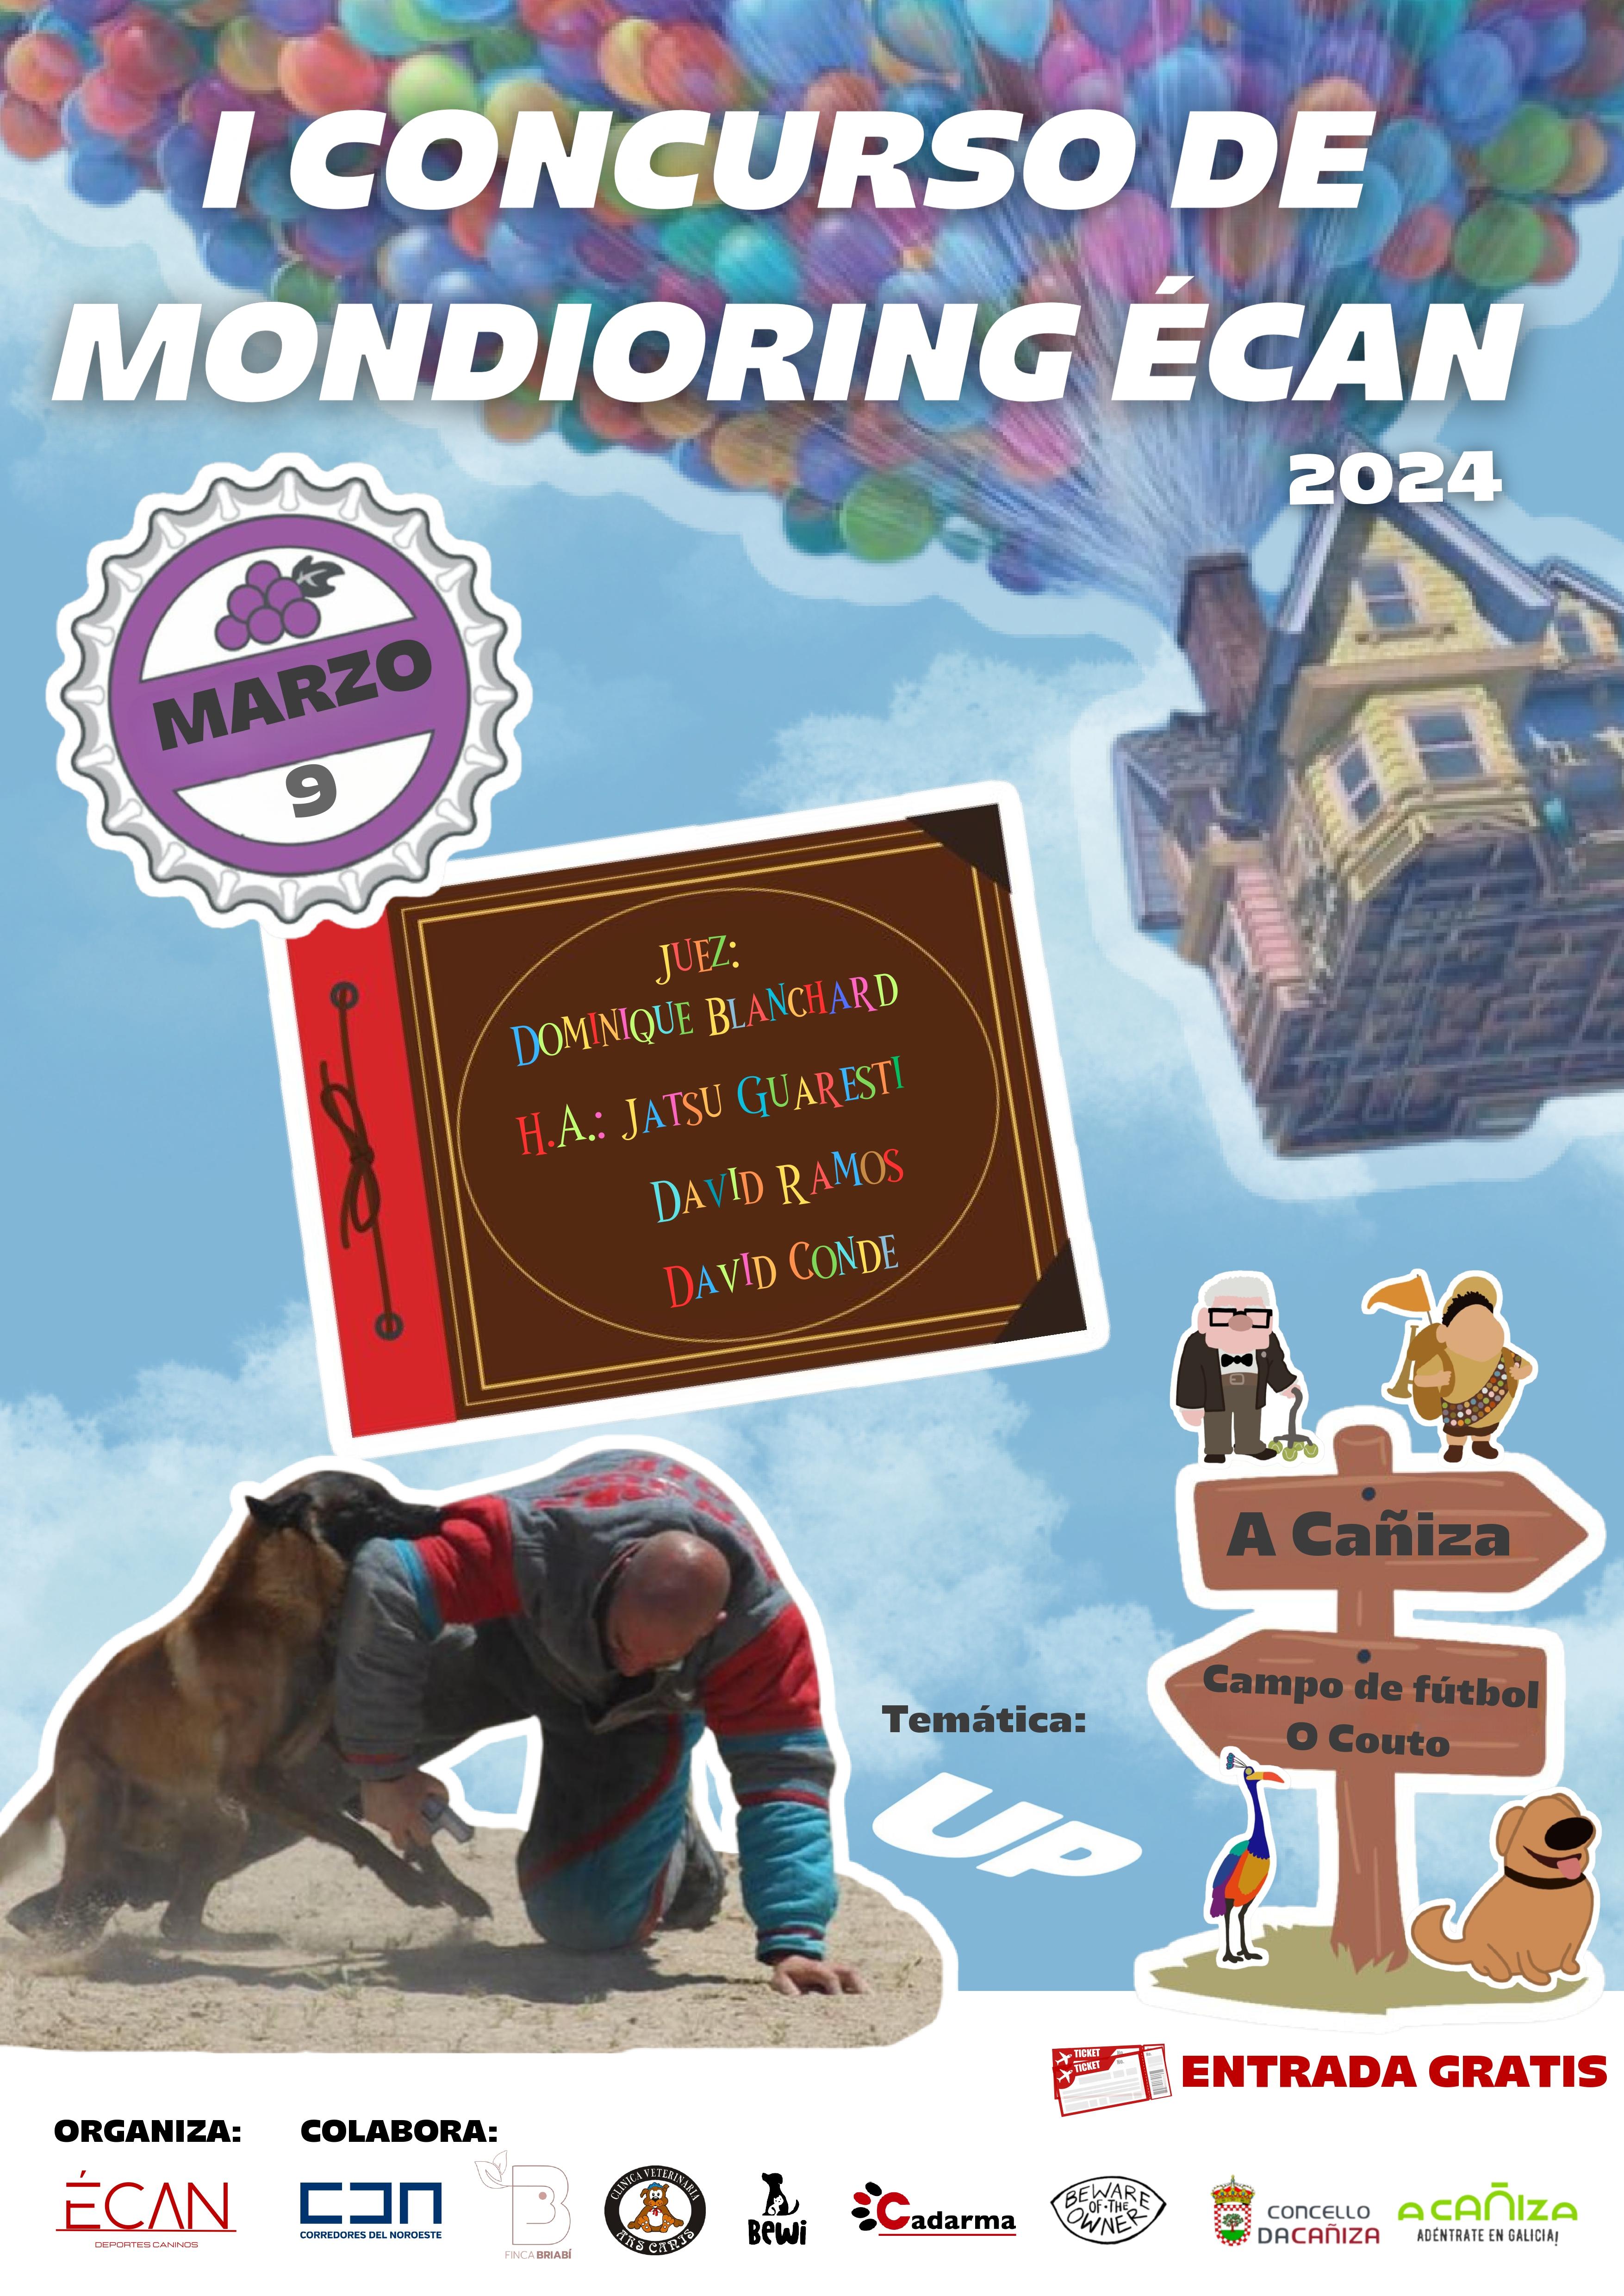 I Concurso de Mondioring Écan na Cañiza.  9 de marzo de 9h a 14h no campo de fútbol de O Couto